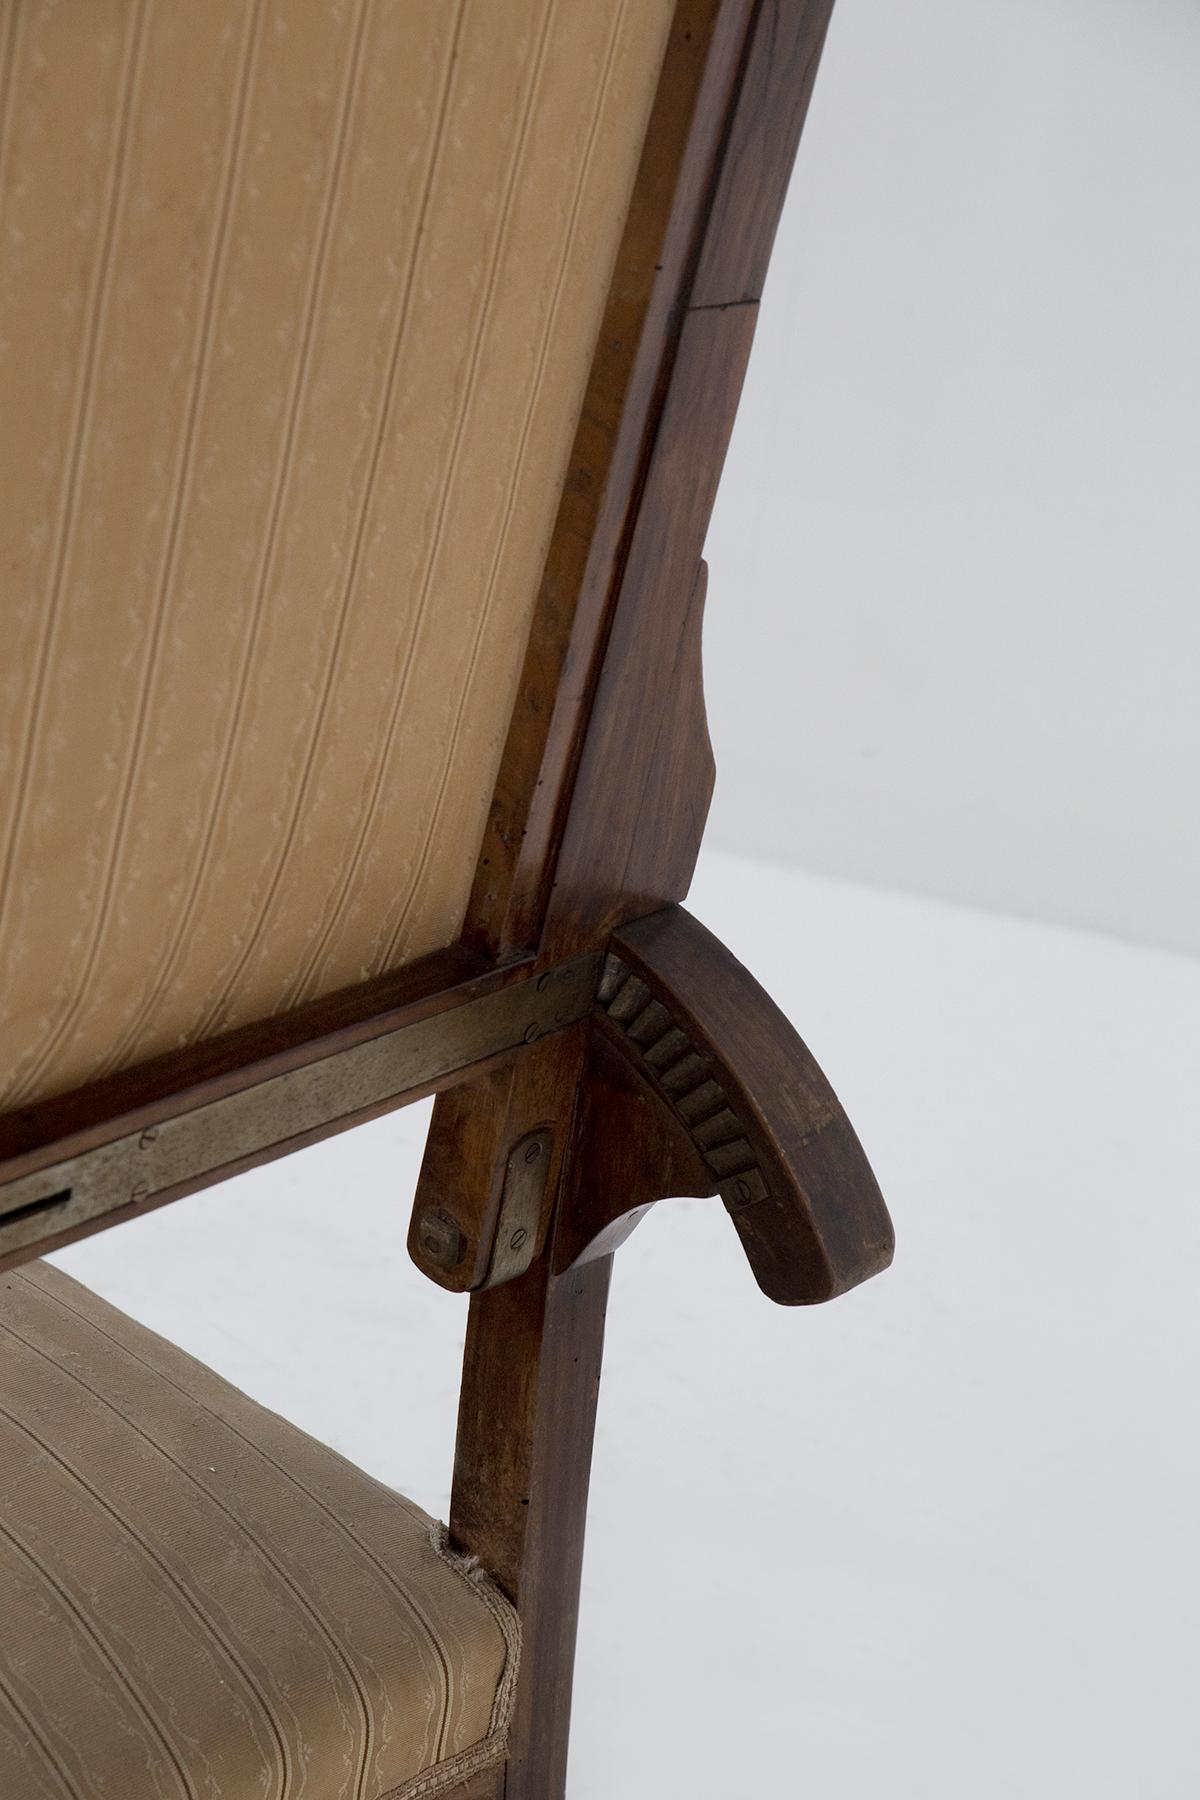 Italian Art Nouveau period armchair in original fabric For Sale 2